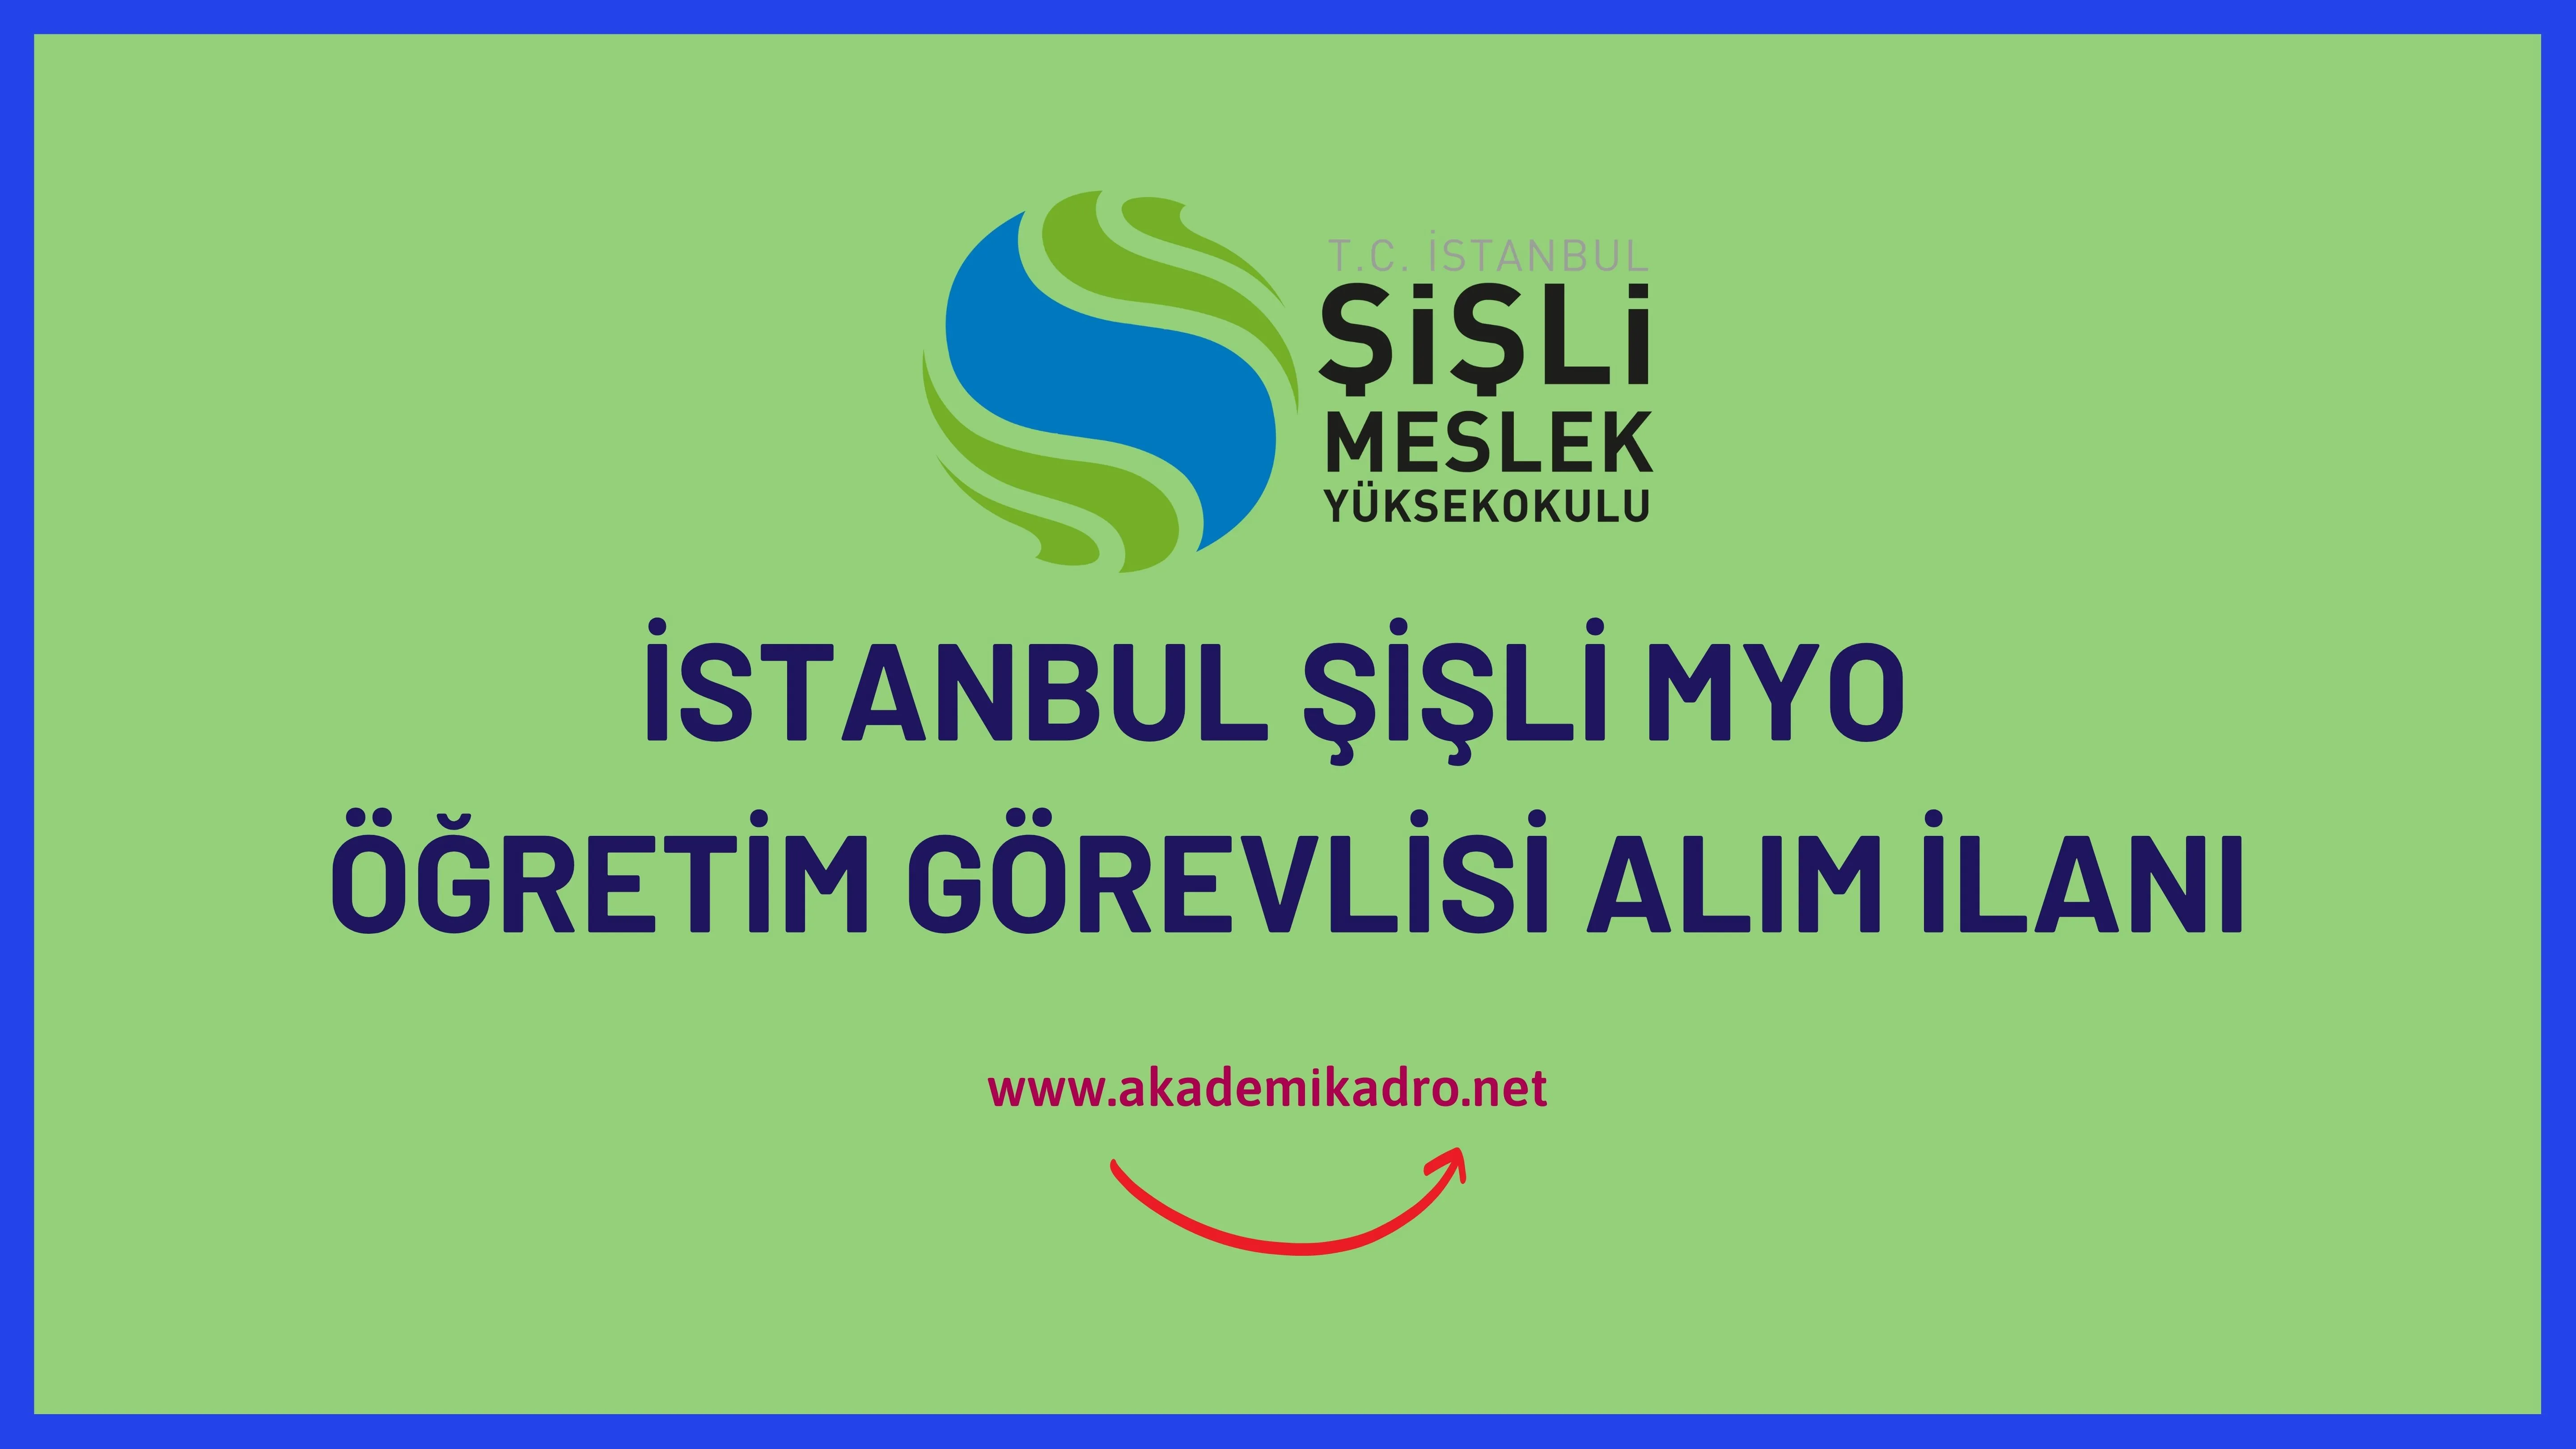 İstanbul Şişli Meslek Yüksekokulu 9 Öğretim Görevlisi ve 4 öğretim üyesi alacaktır.